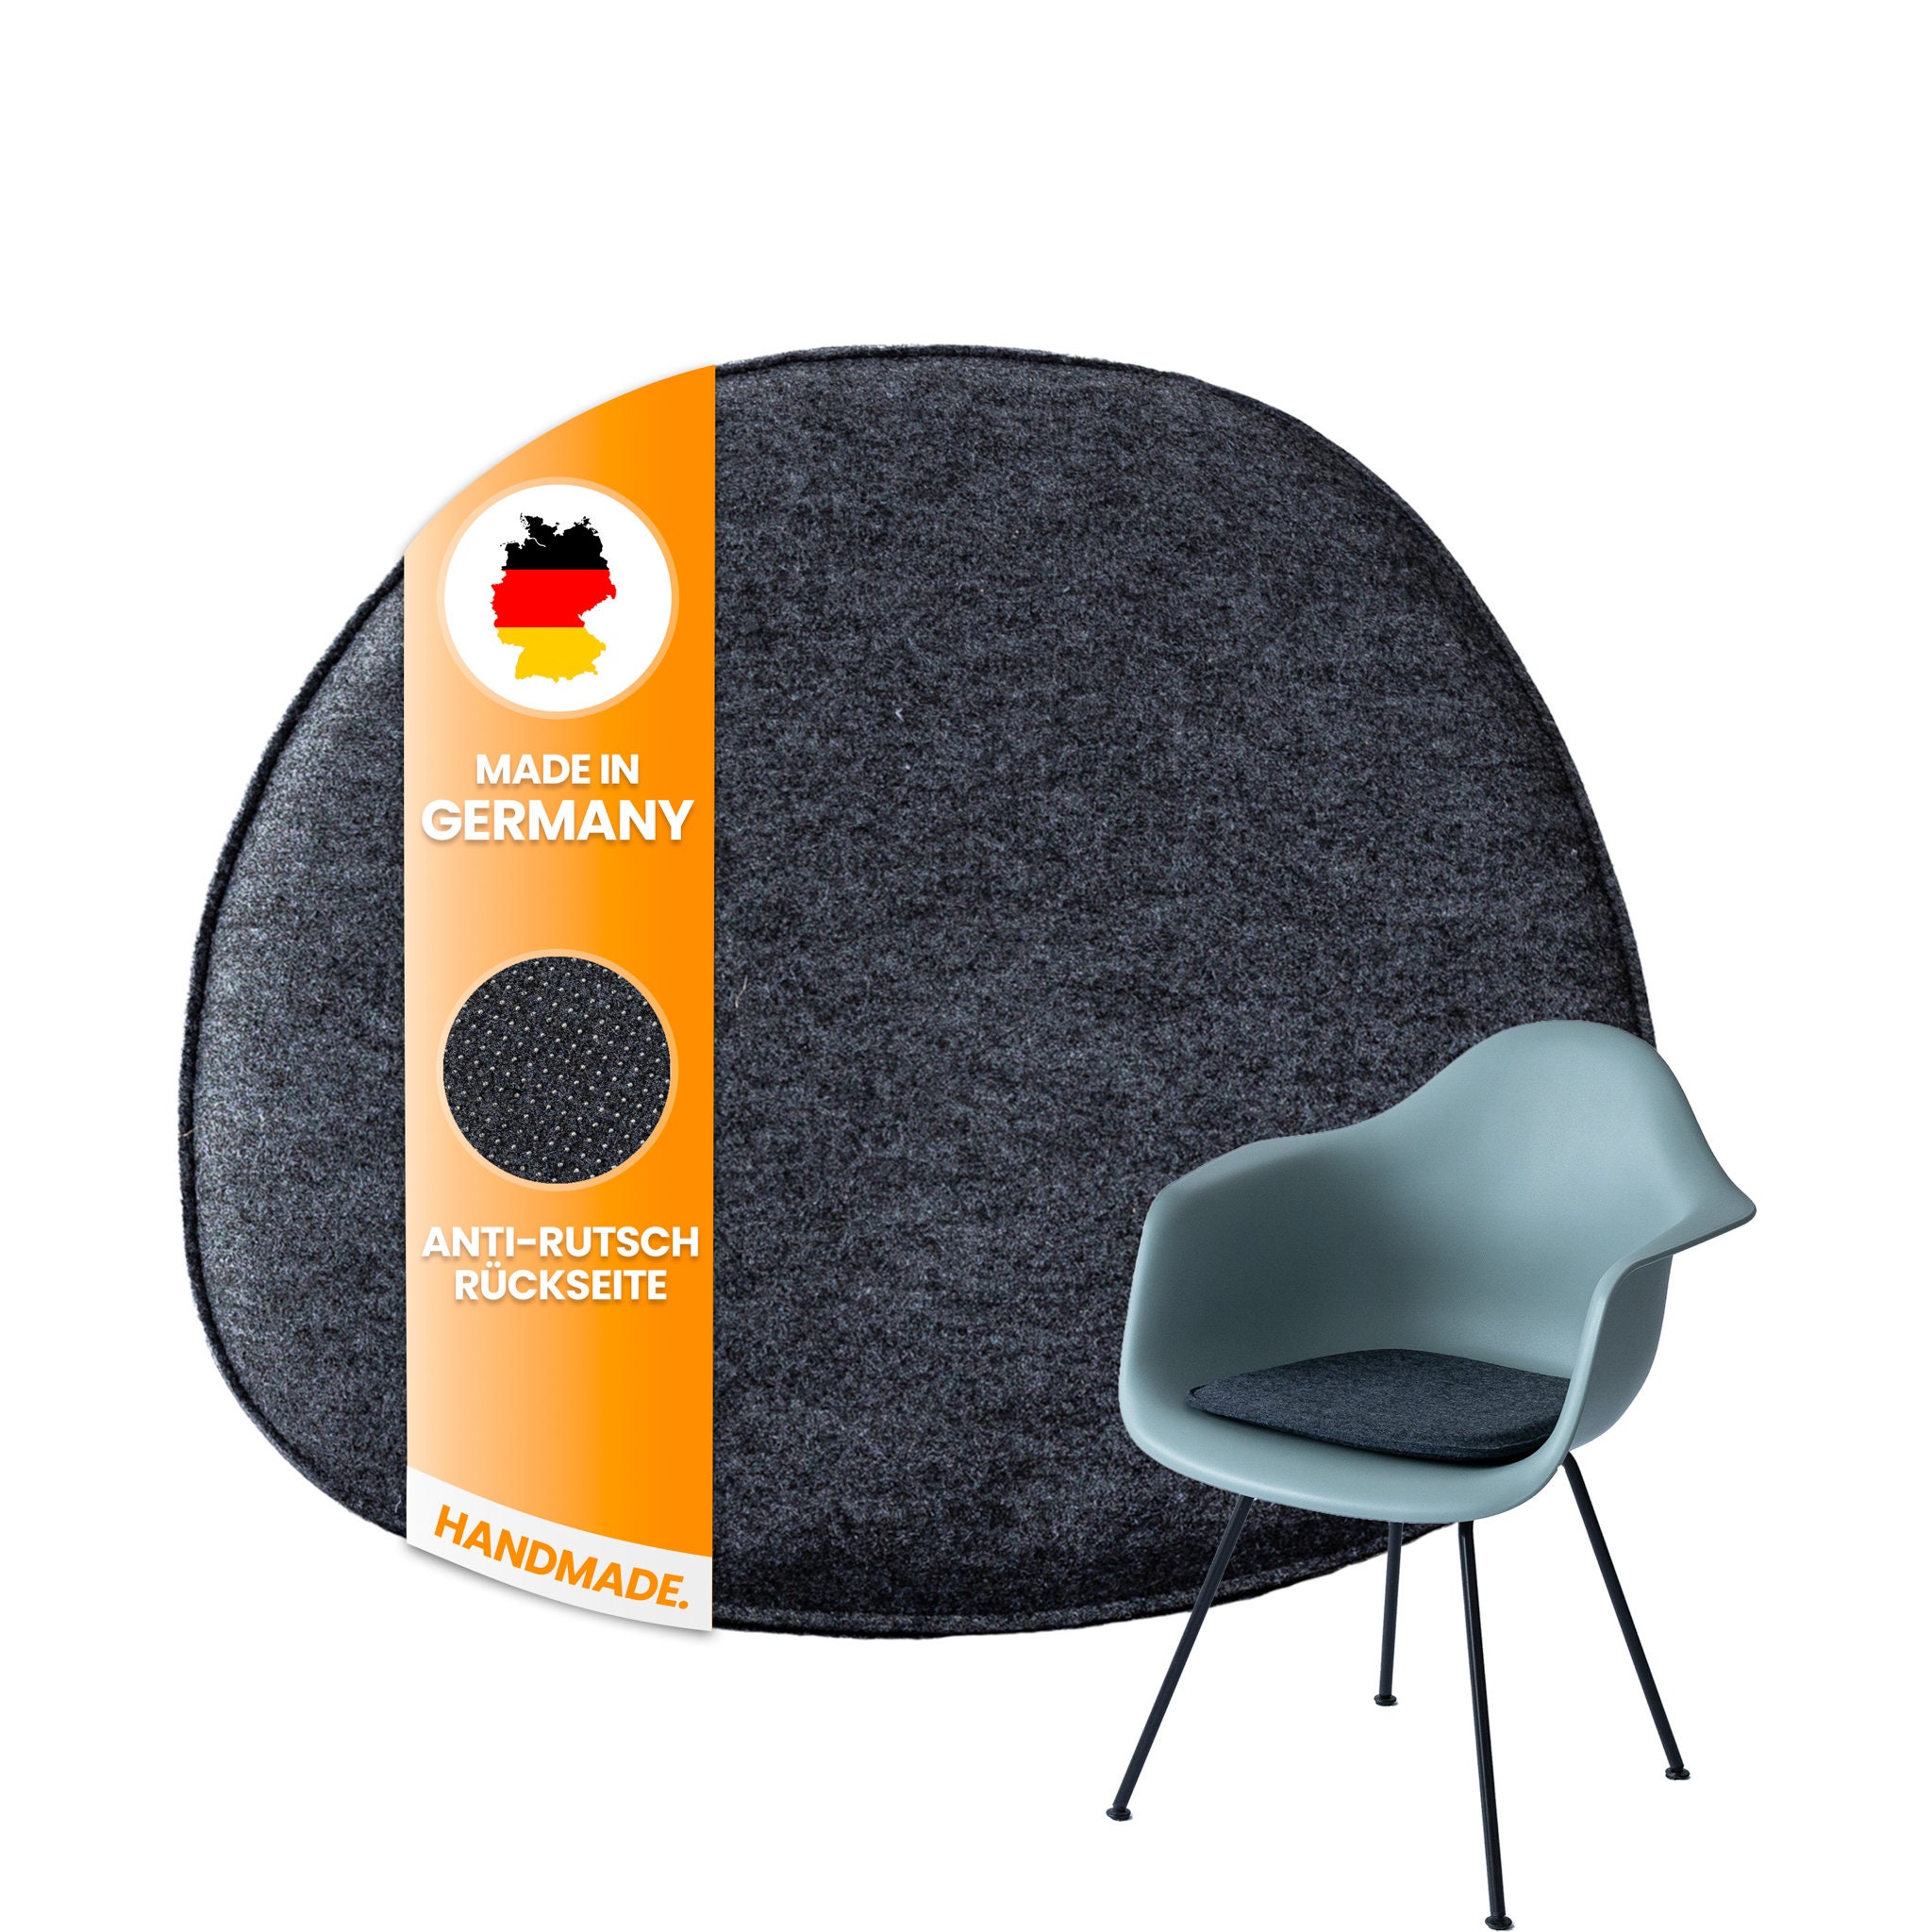 Non Slip Kitchen Chair Cushions Dutch Fleece Chair Cushions for